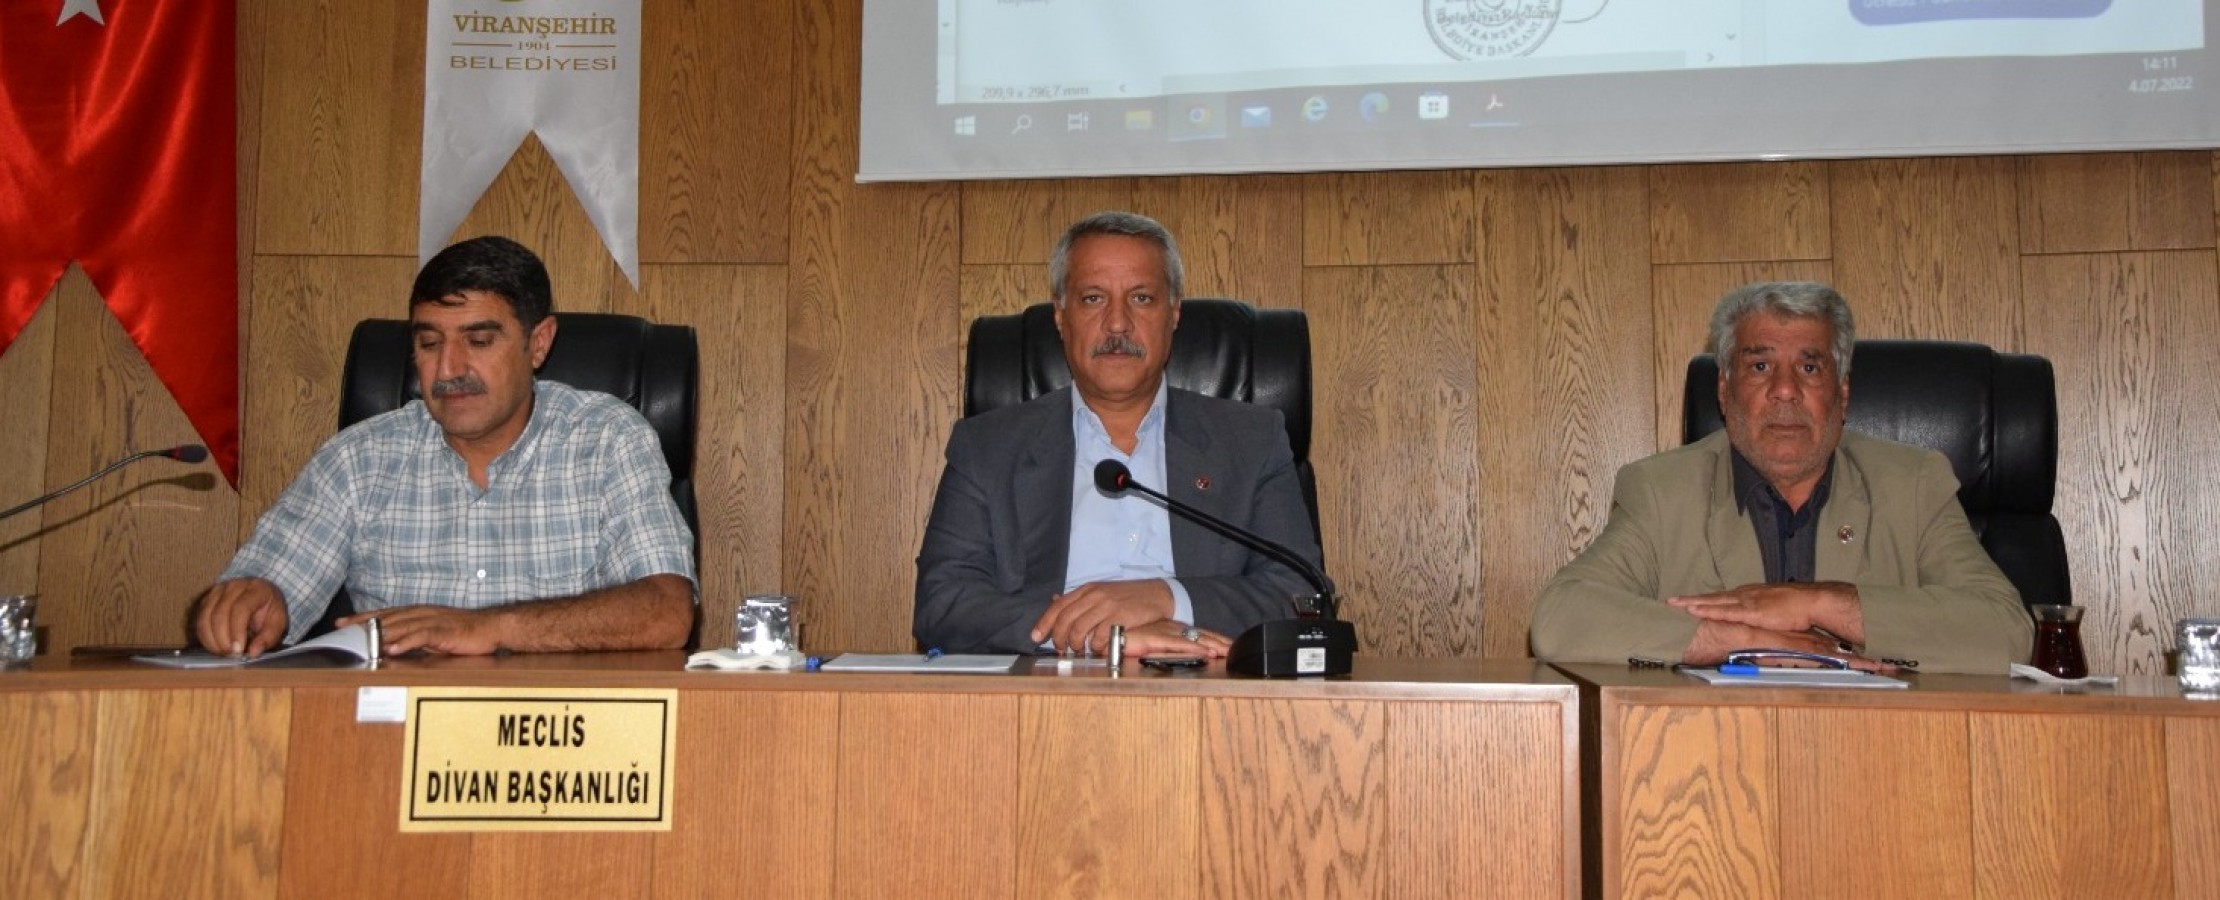 Viranşehir’de belediye meclis toplantısı yapıldı;